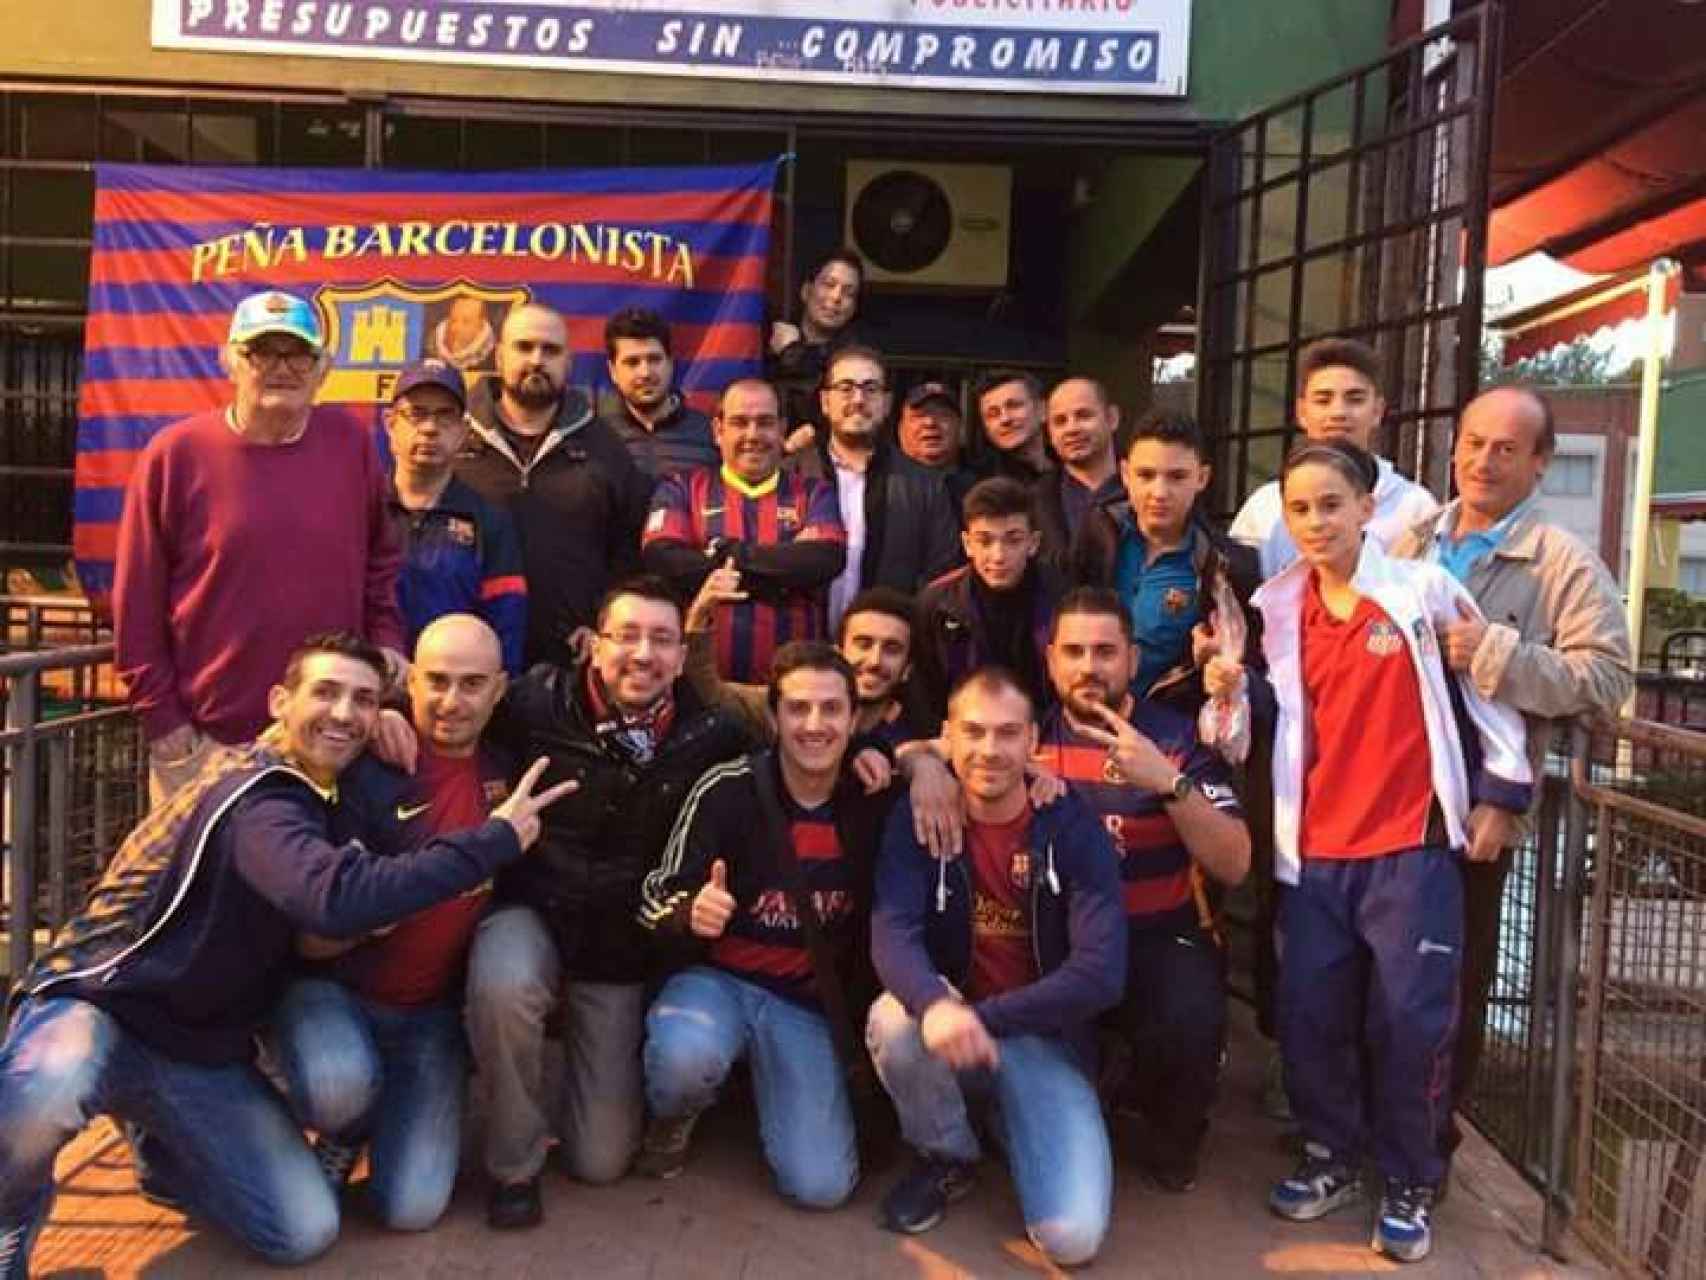 Peña Barcelonista Alcalá de Henares. Algunos de sus miembros defienden el derecho del club a sumarse a la iniciativa soberanista.